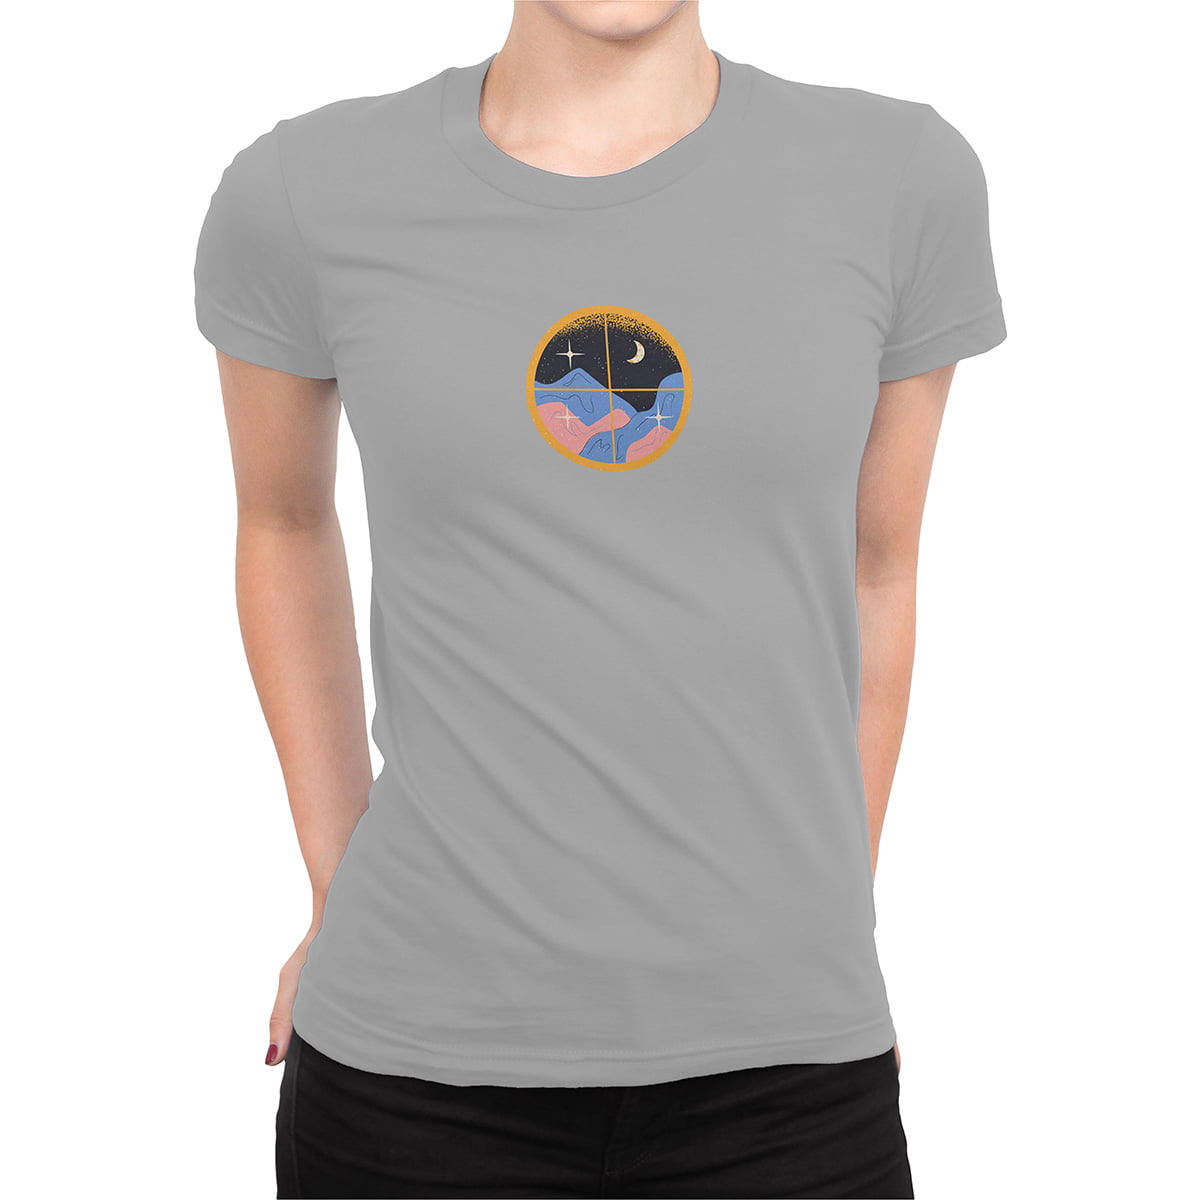 Ay ve tepe fxsca2364c kadin tshirt gri orta kucuk - mistik yıldızlar, ay ve tepe - astroloji kadın t-shirt - figurex